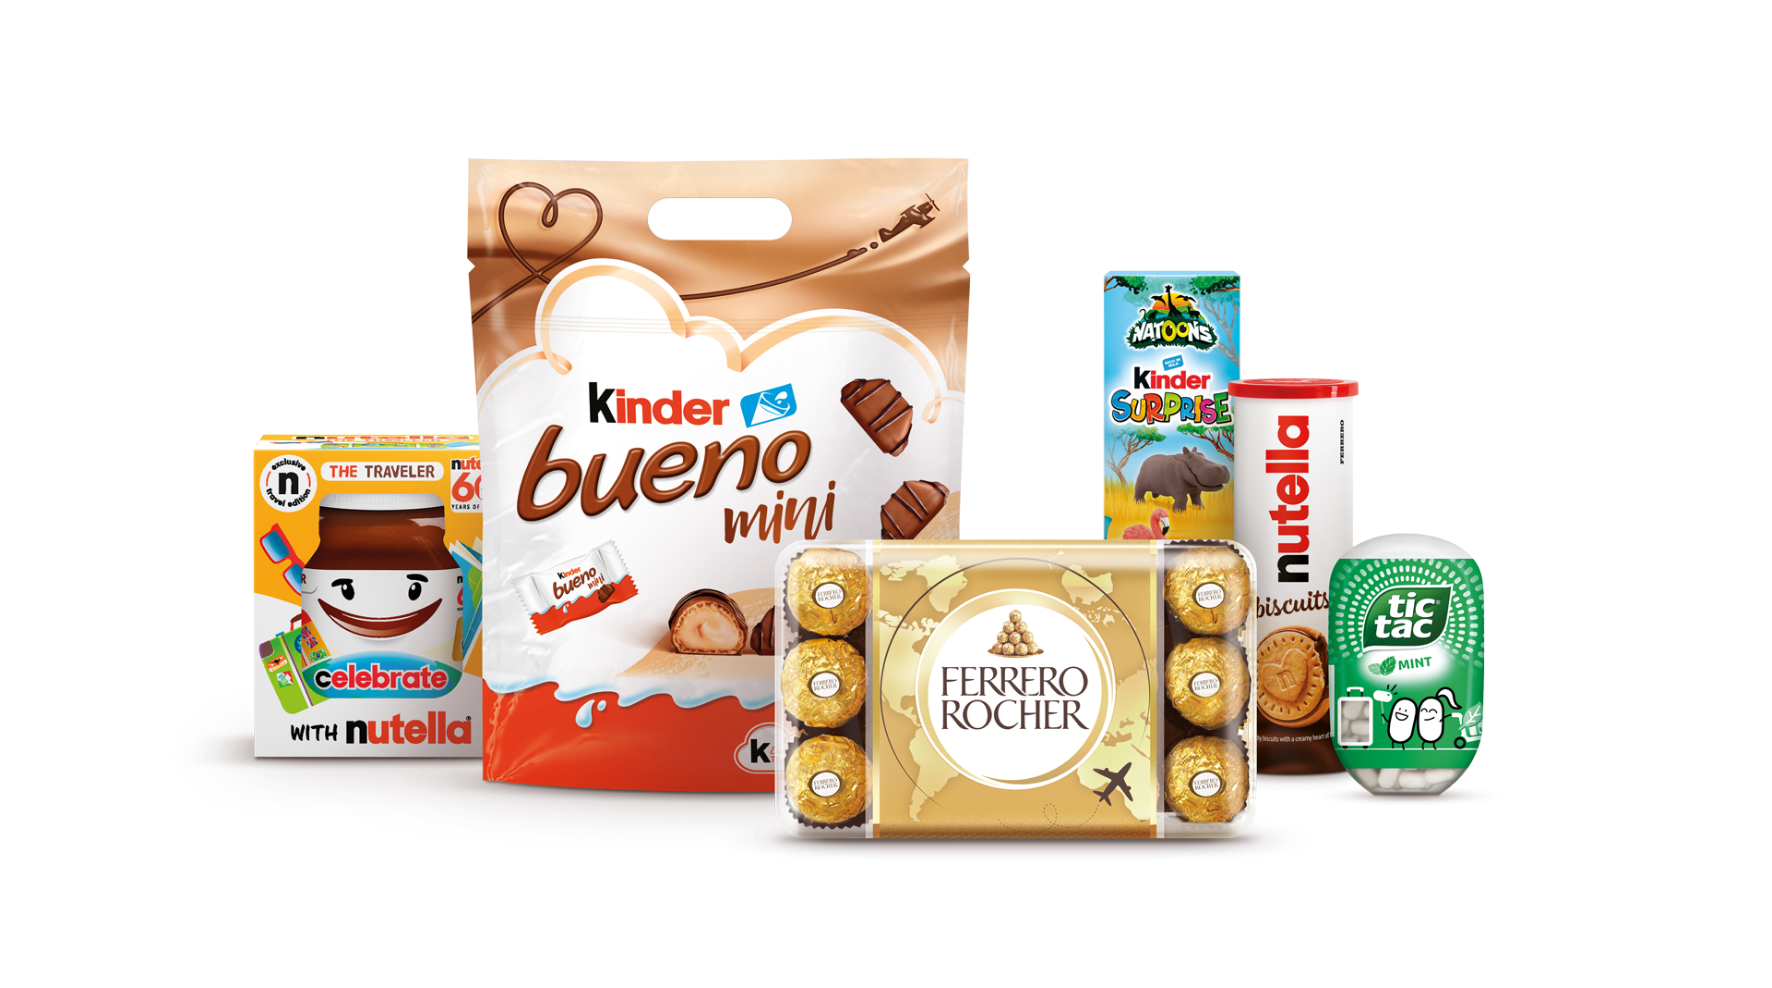 Ferrero products